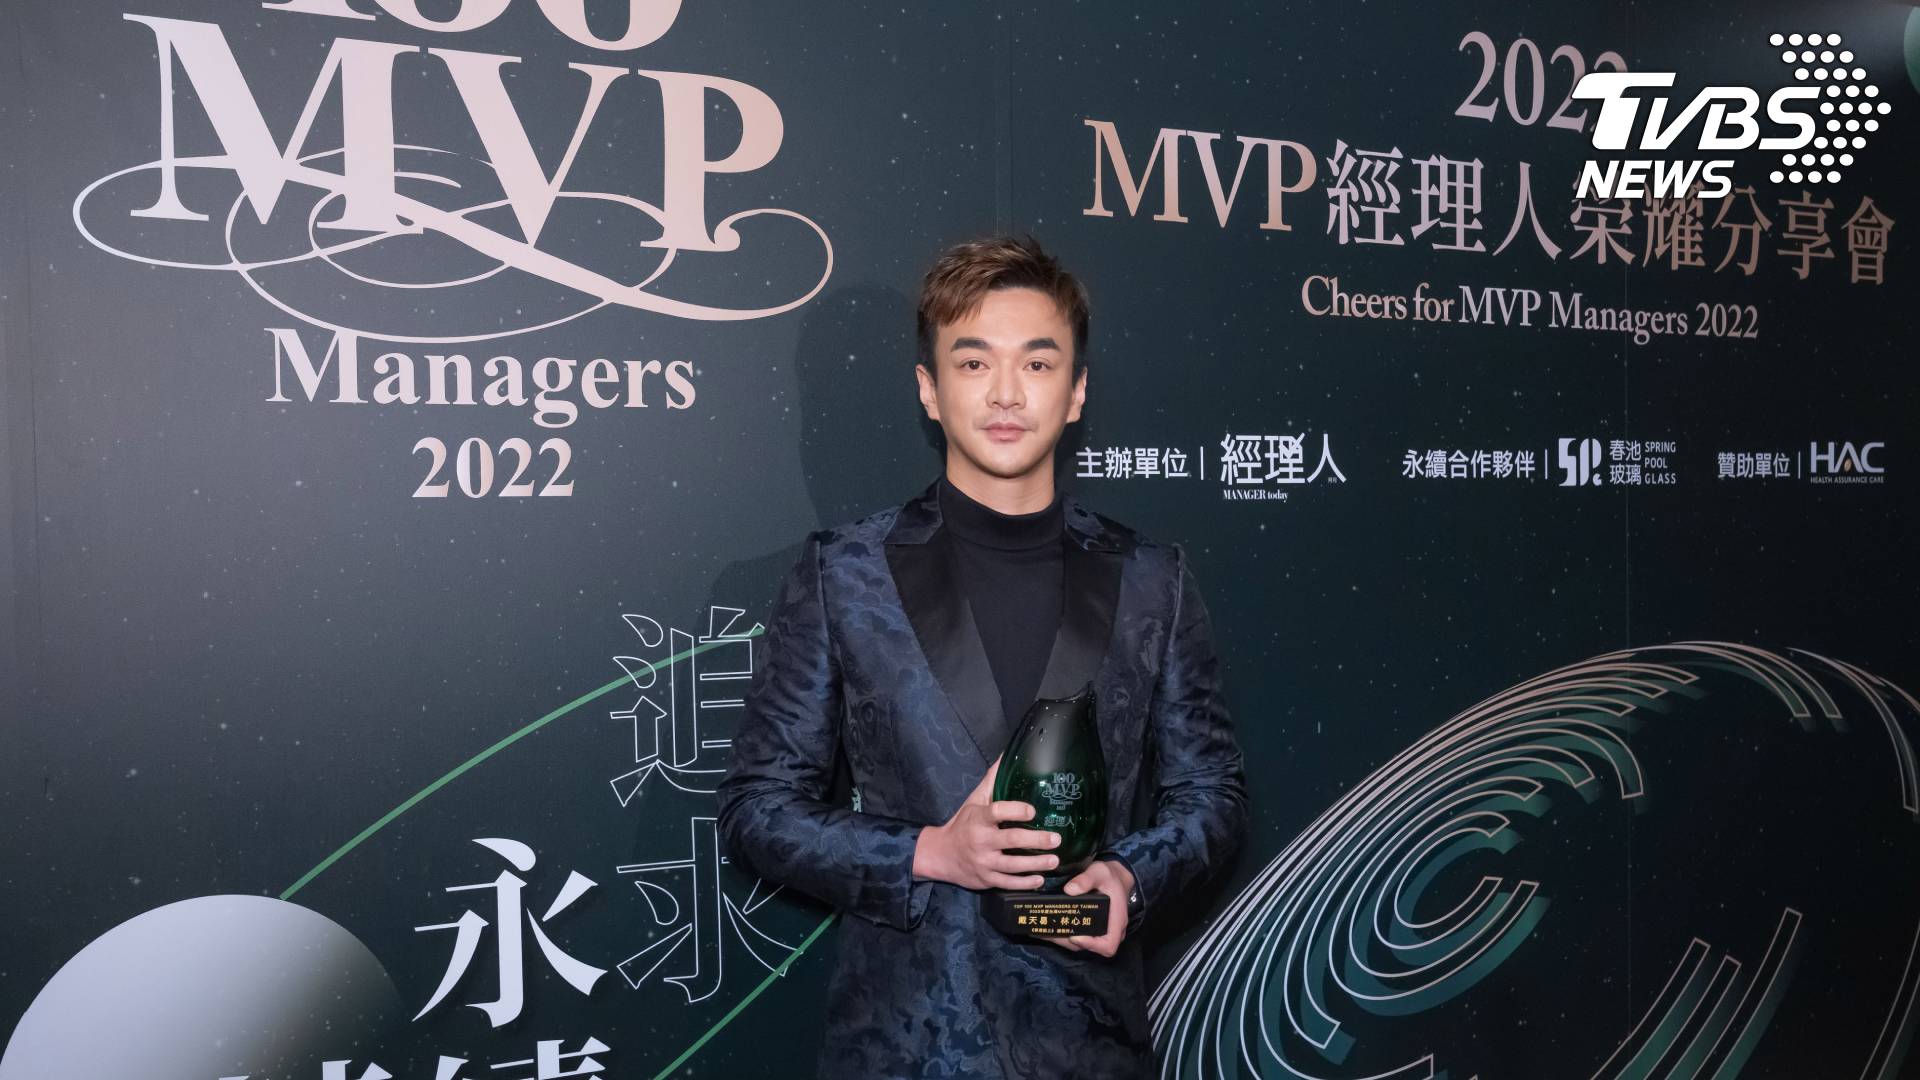 《華燈初上》總製作人戴天易獲頒2022年百大MVP經理人獎「Super MVP」大獎（圖/TVBS)